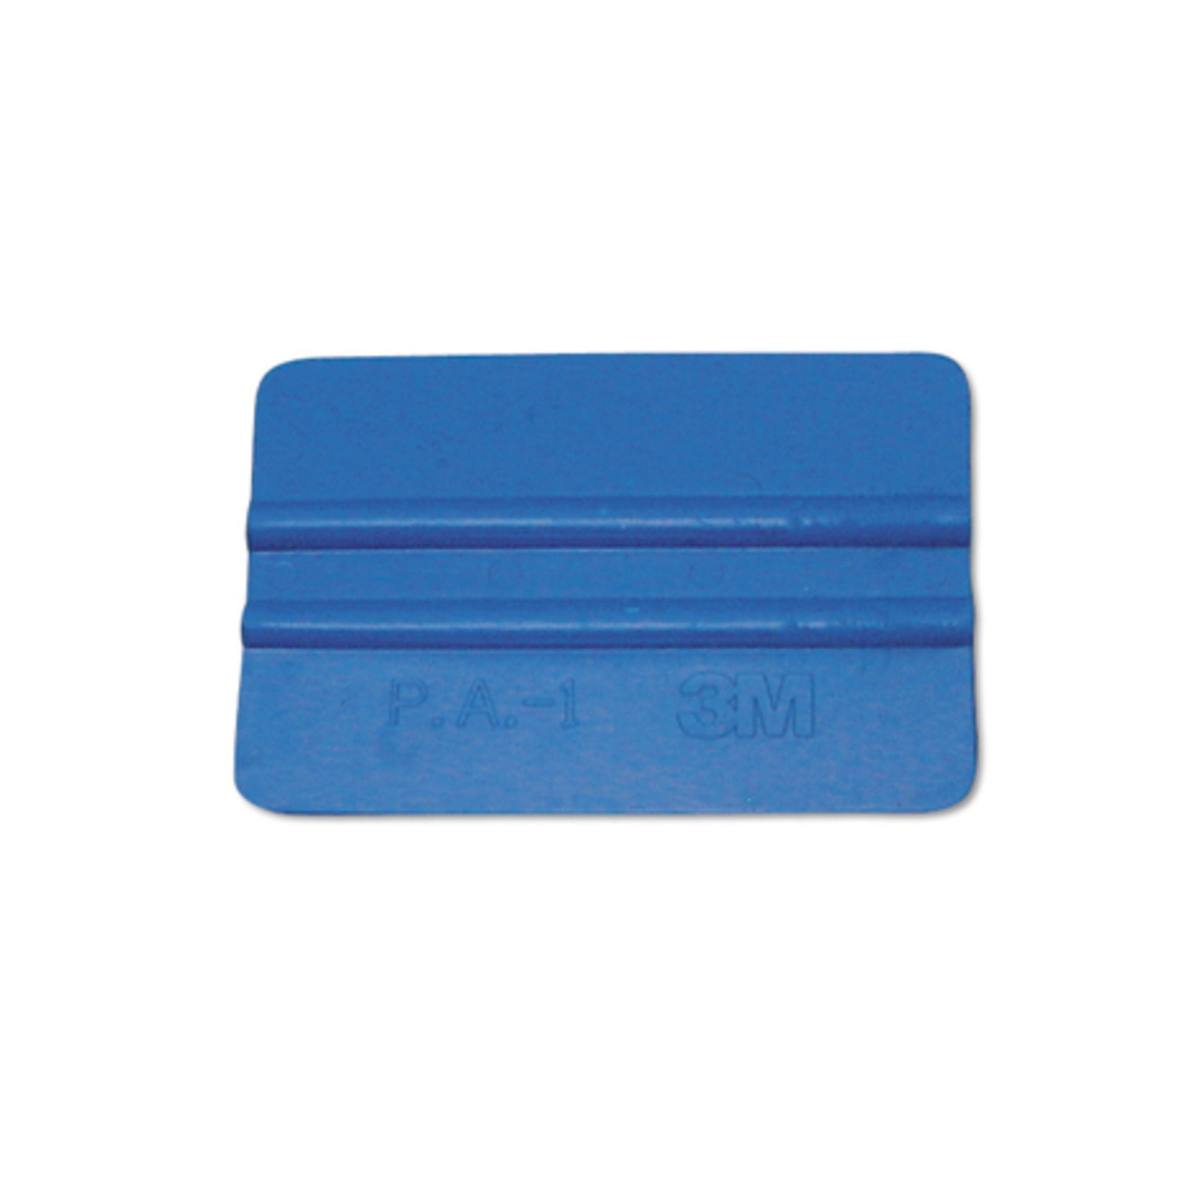 3M™ Plastikrakel blau, weich, PA-1-B